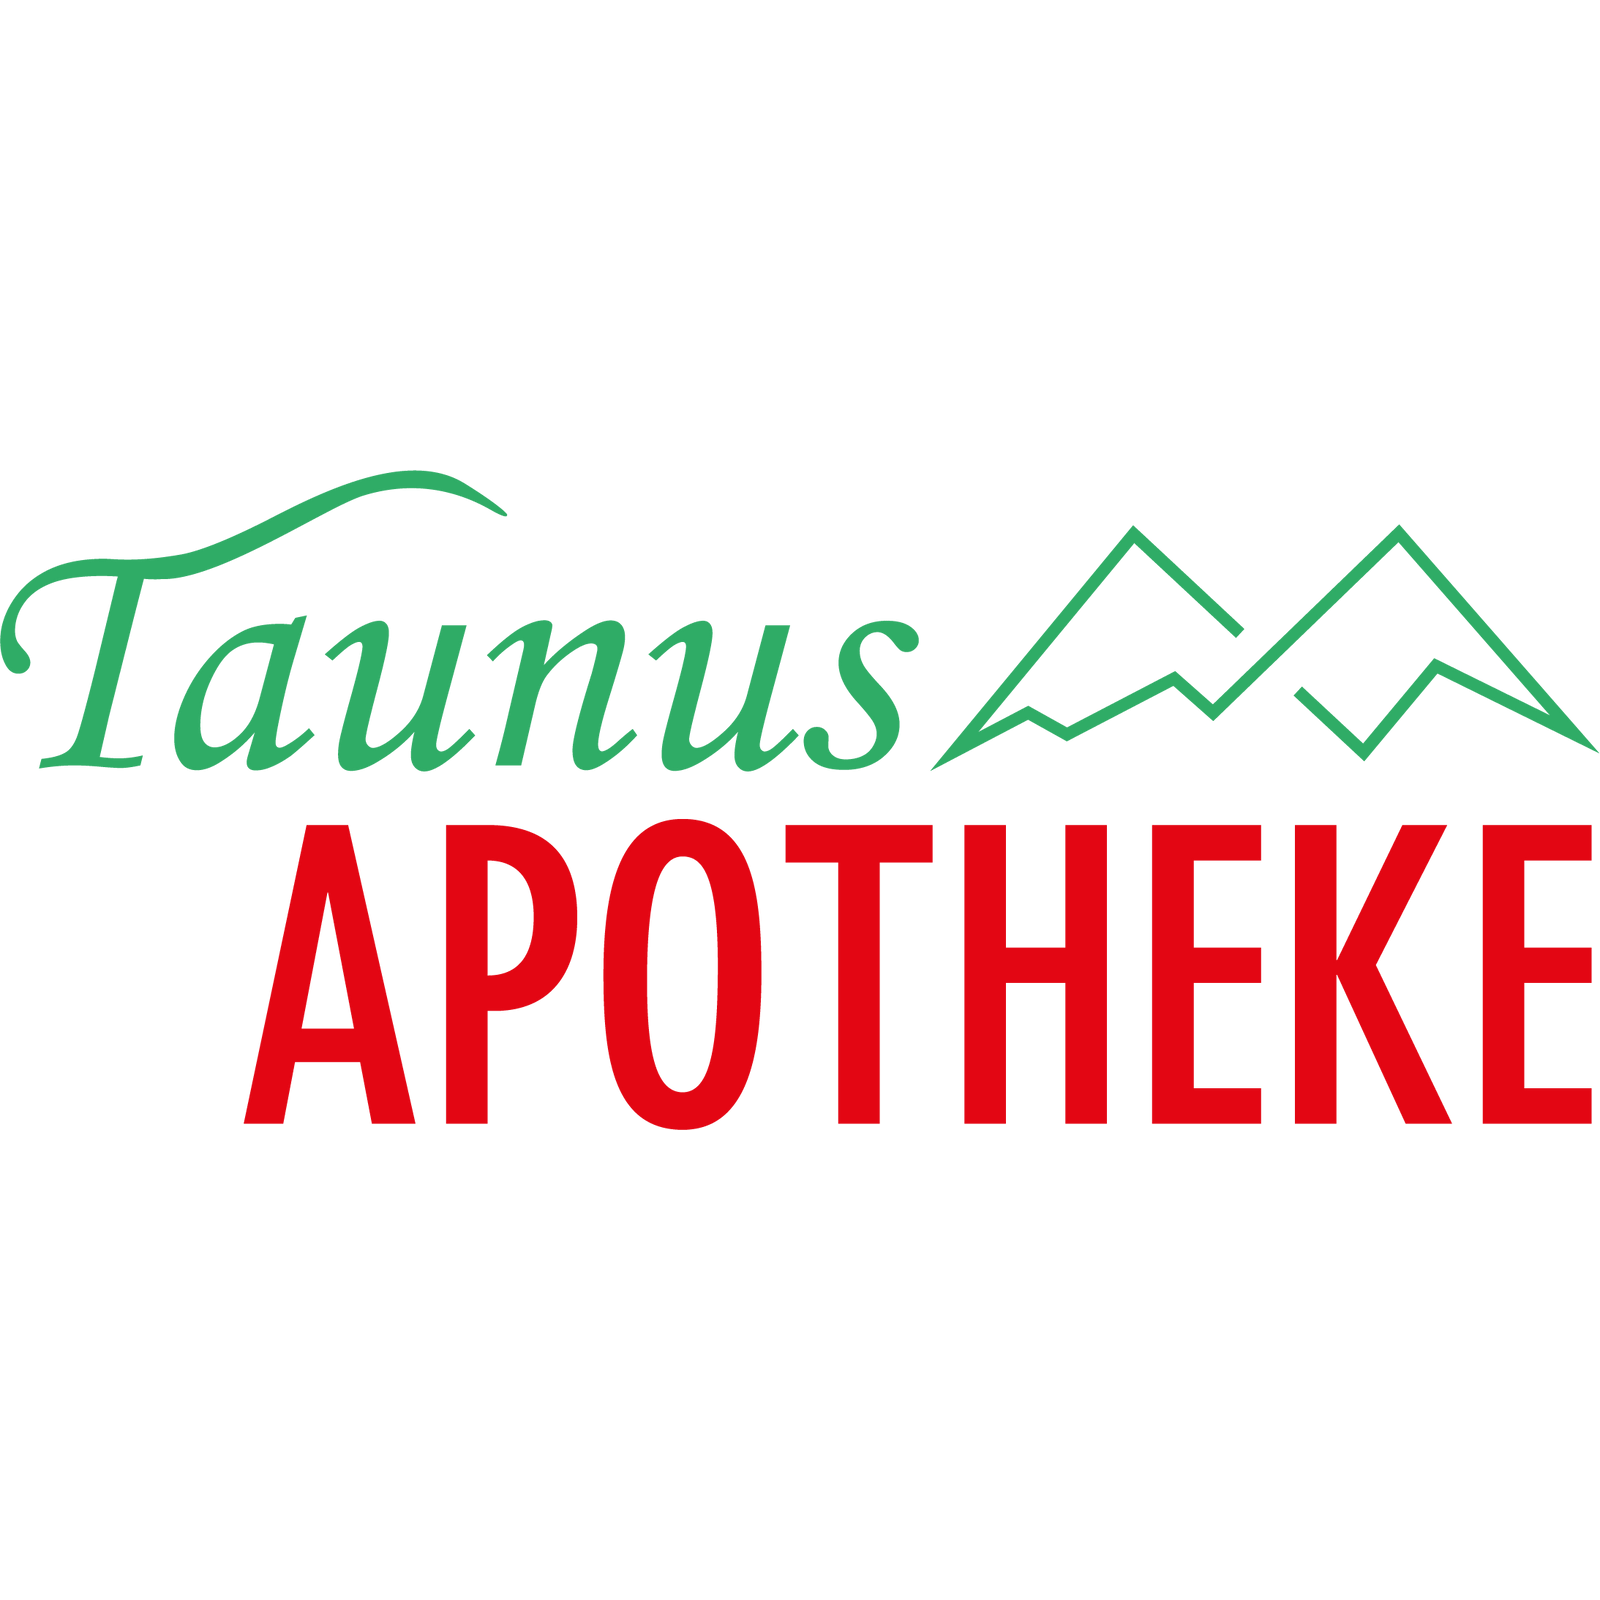 Logo der Taunus-Apotheke